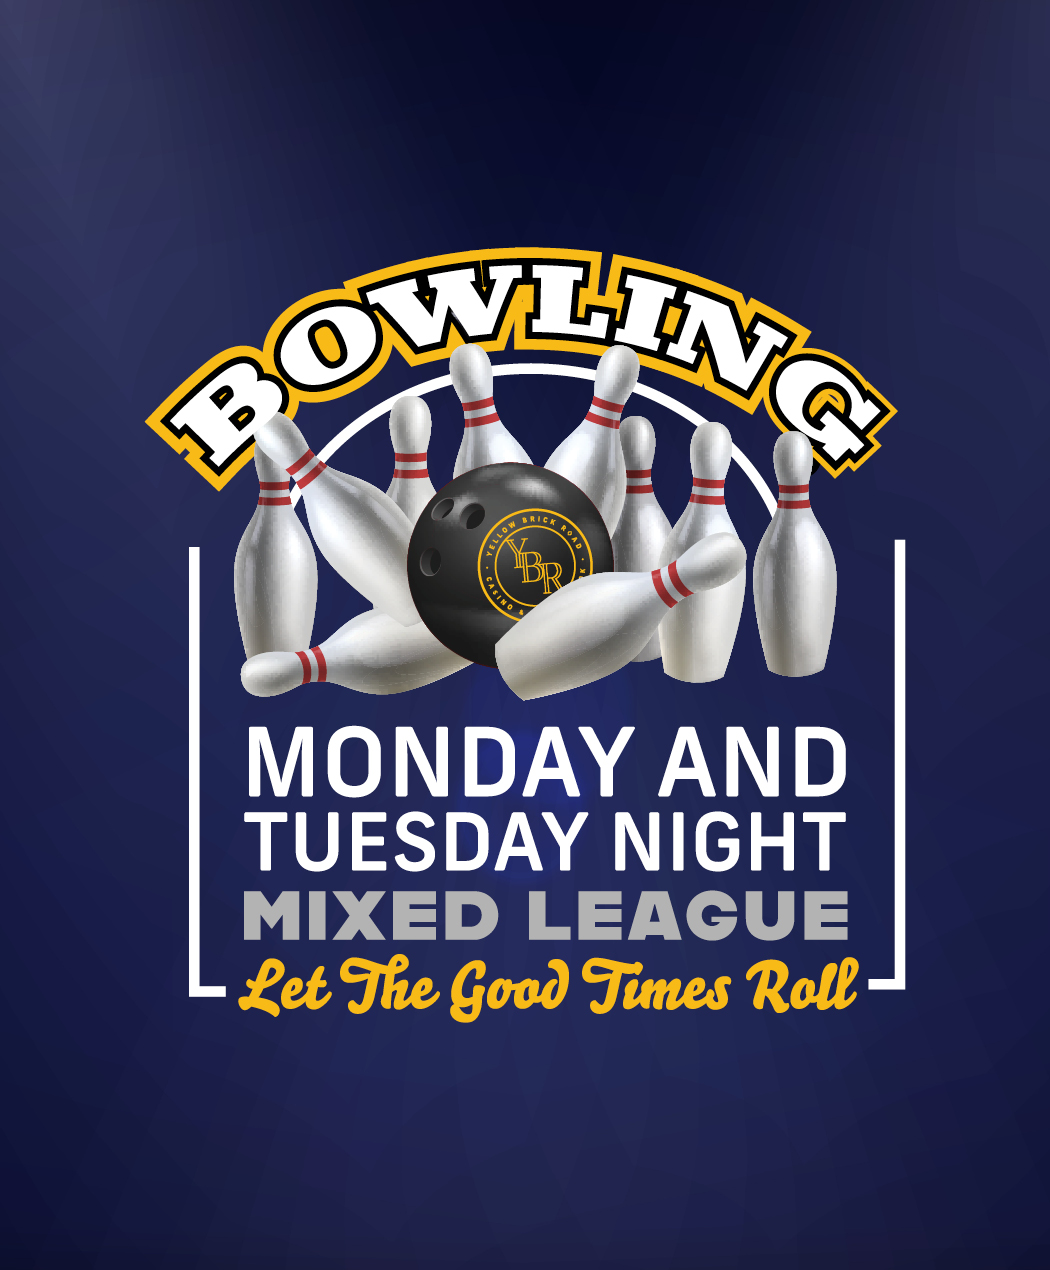 Bowling Mixed League